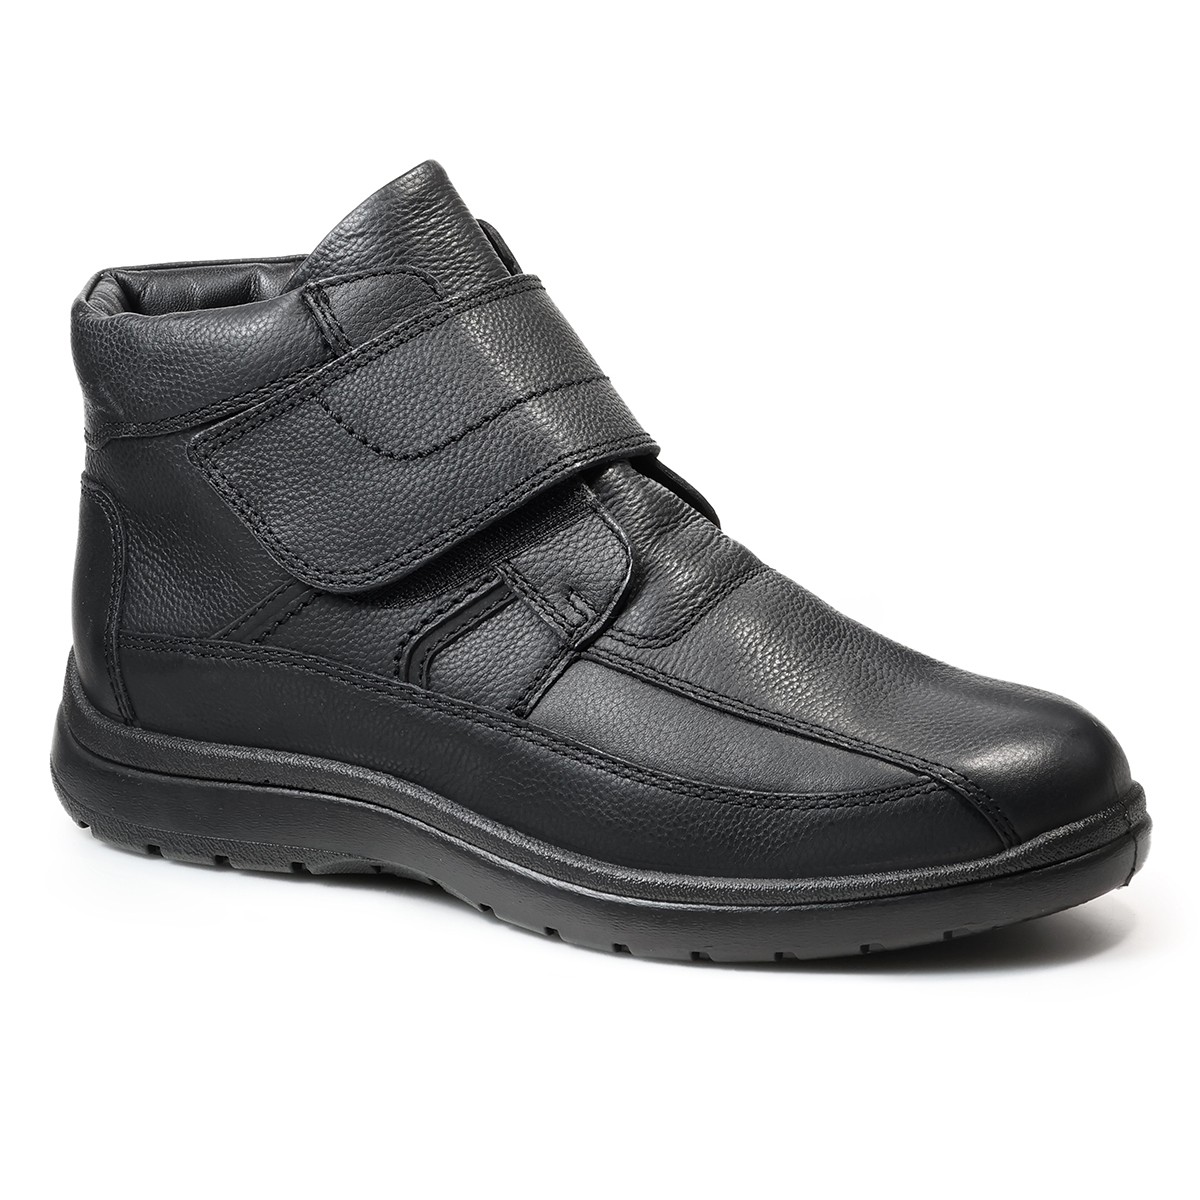 Зимние мужские ботинки Atlanta, Jomos, черные ботинки мужские jomos atlanta черные